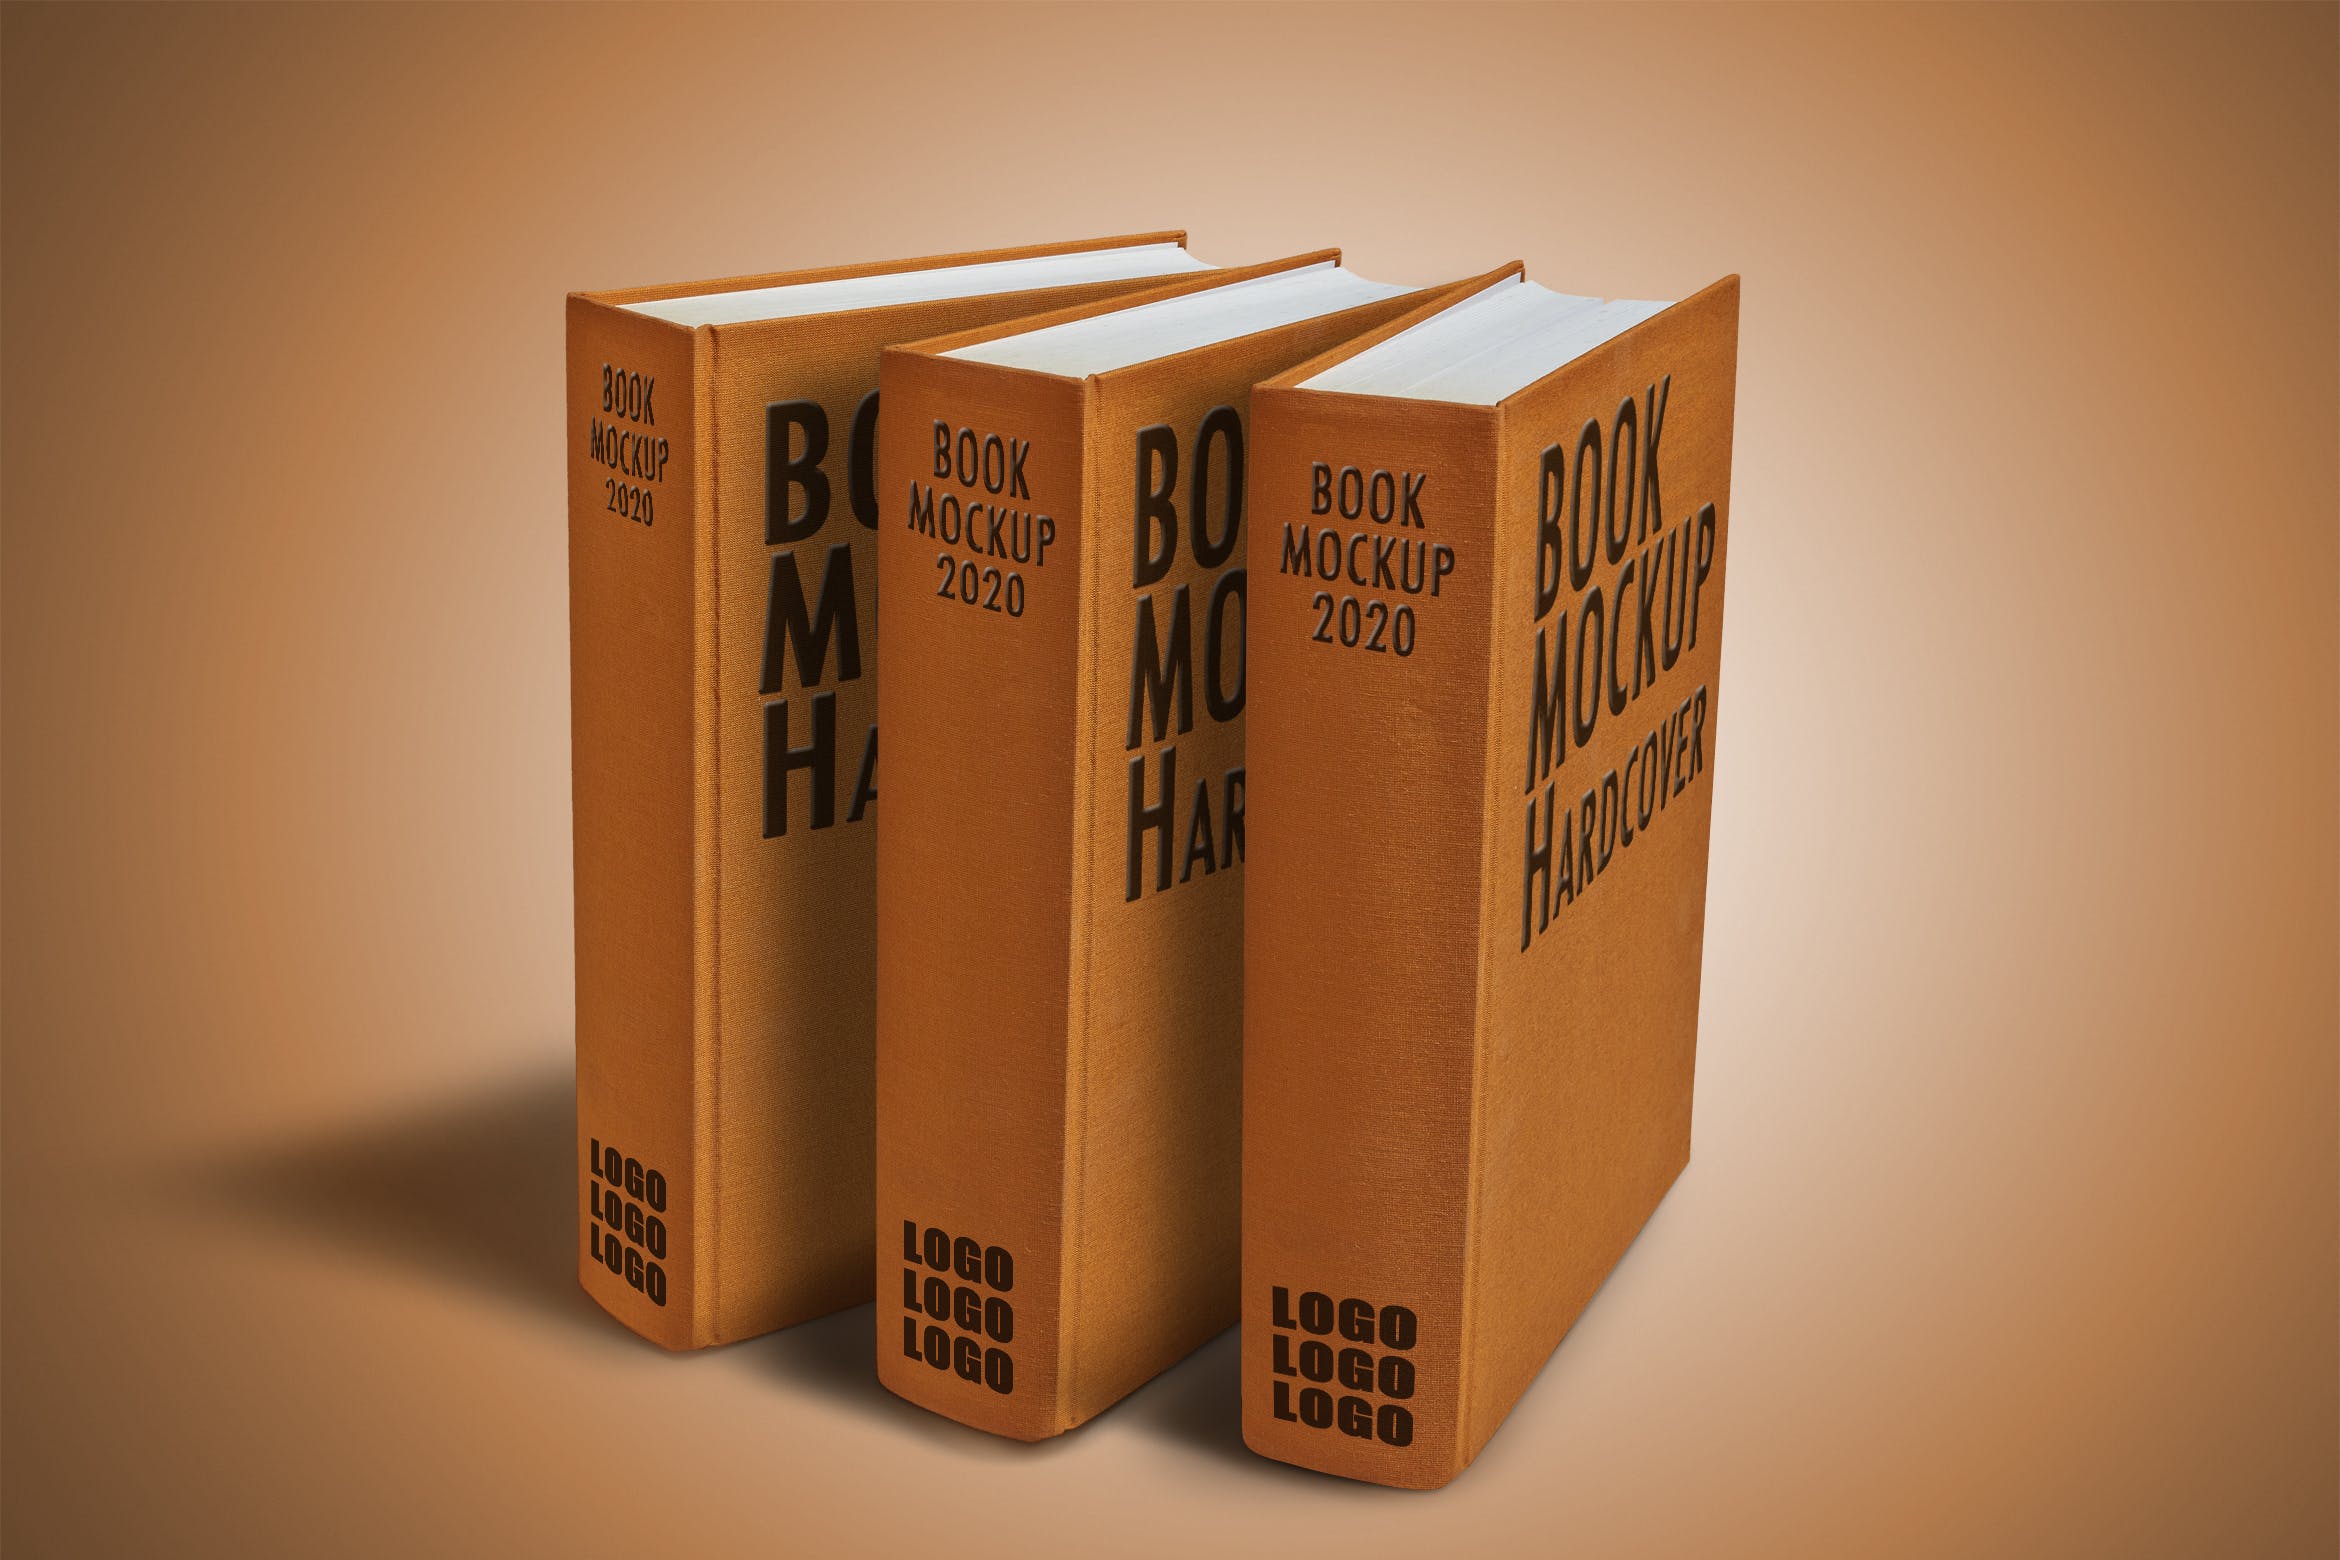 立放式精装硬封图书外观设计效果图样机素材库精选 Hardcover_Book_Mockup插图